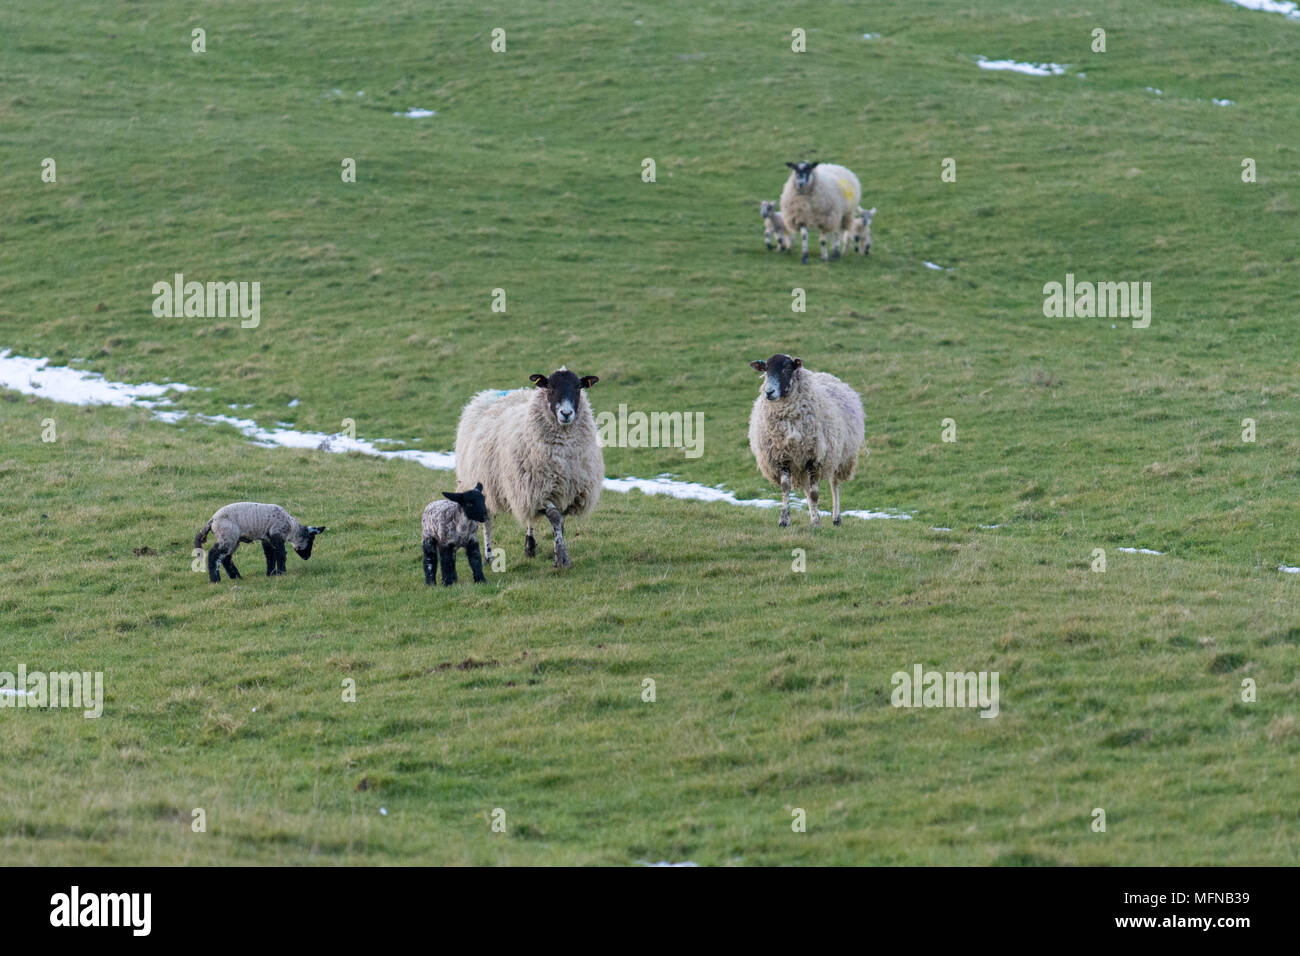 Indaga las ovejas y corderos con nieve en el suelo Foto de stock